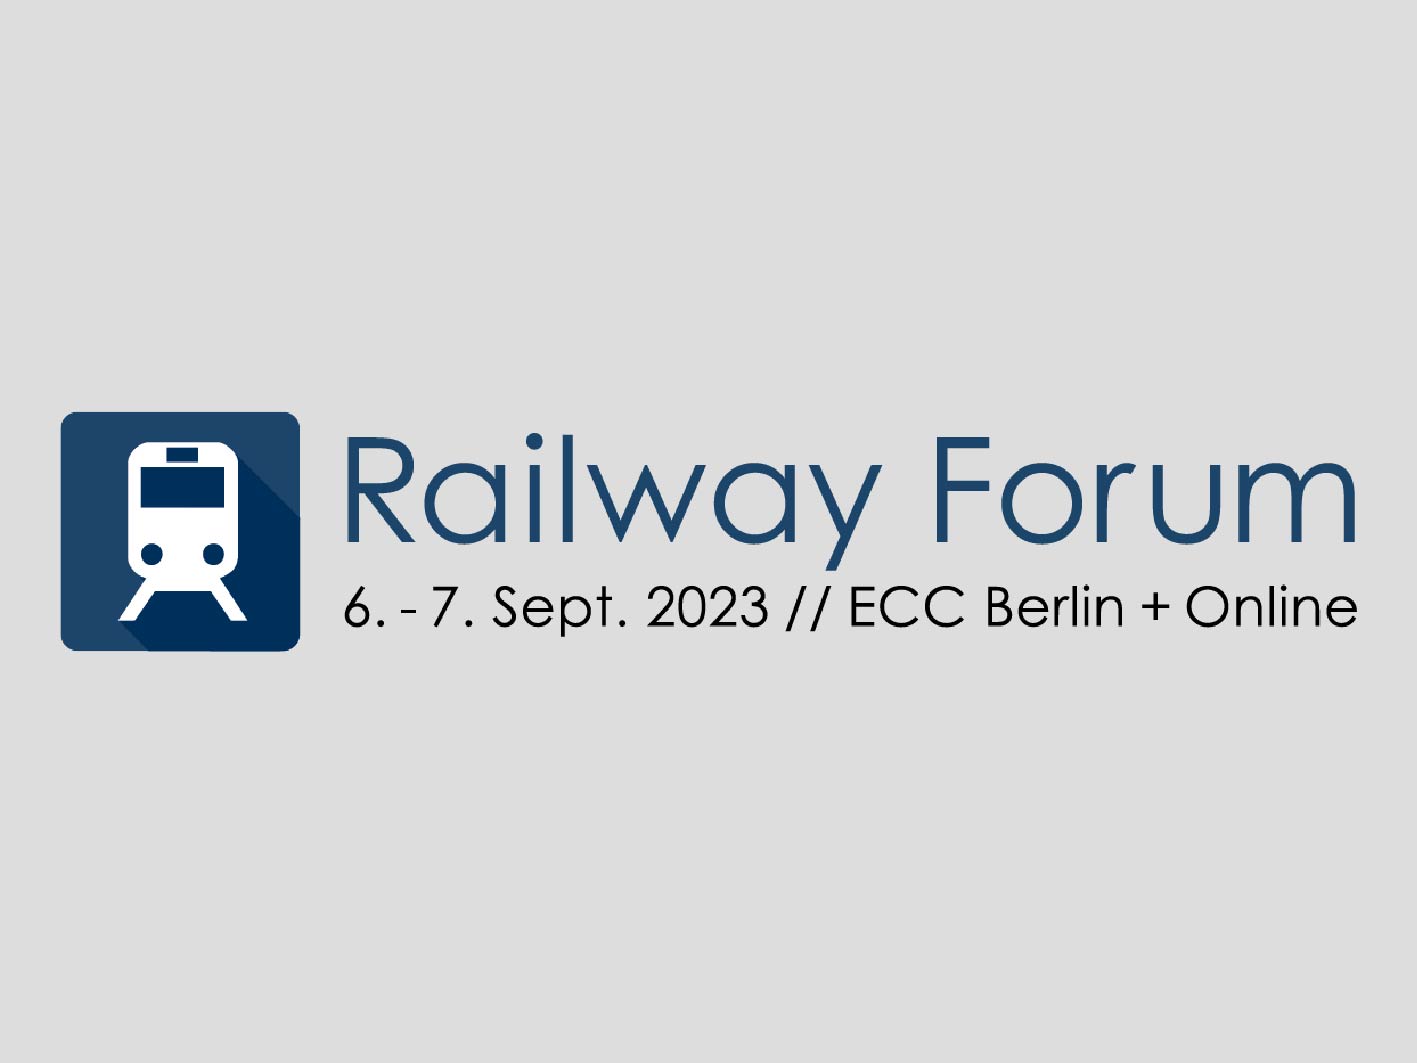 Replique at Railway Forum